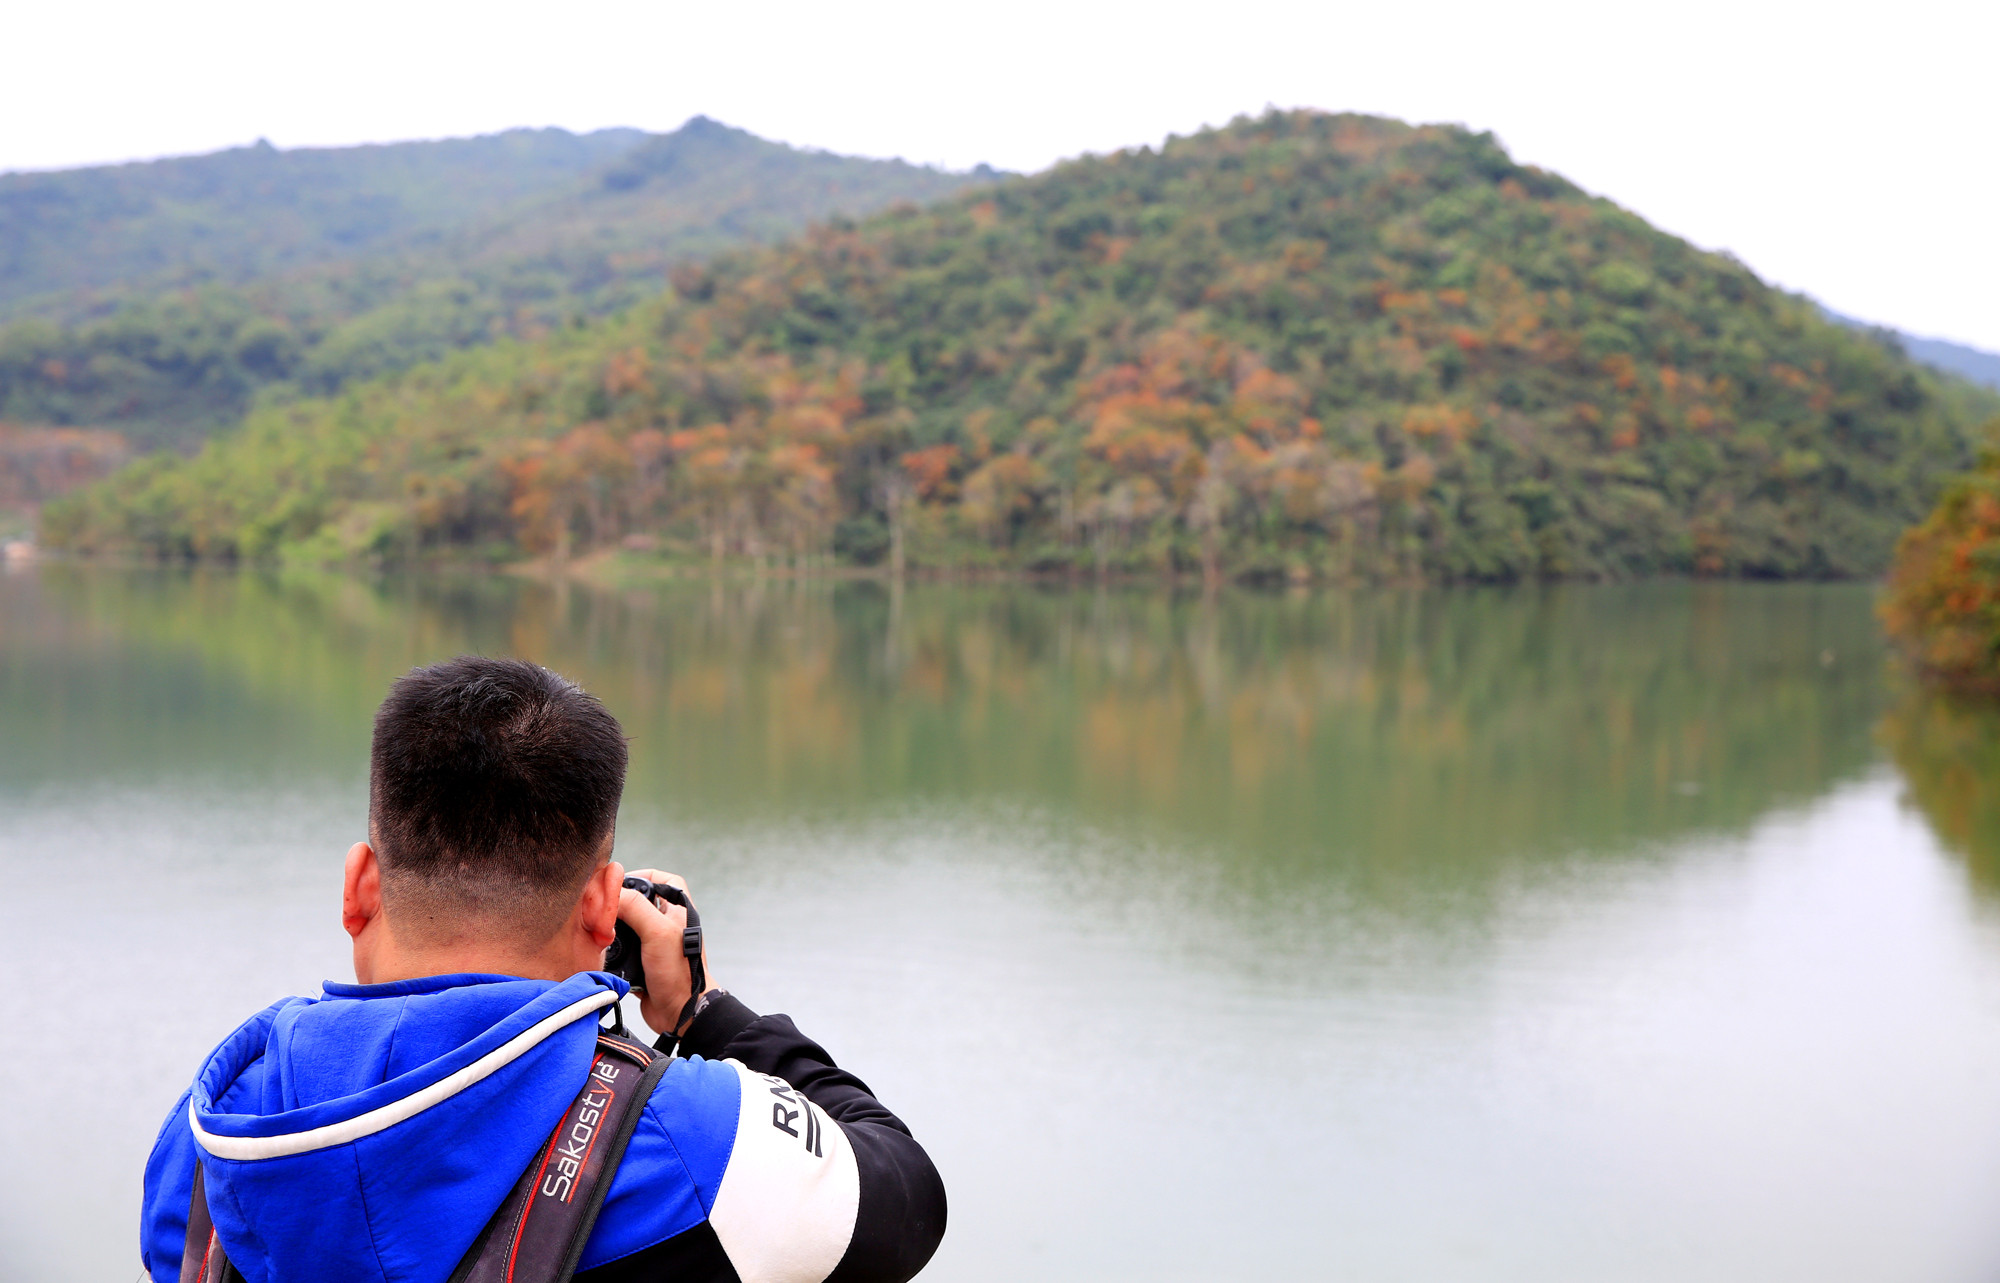 Cây săng lẻ soi bóng xuống màu nước trong xanh của dòng sông Lam là cảm hứng bất tận cho những người thích khám phá, cho các tay máy chuyên và không chuyên.  